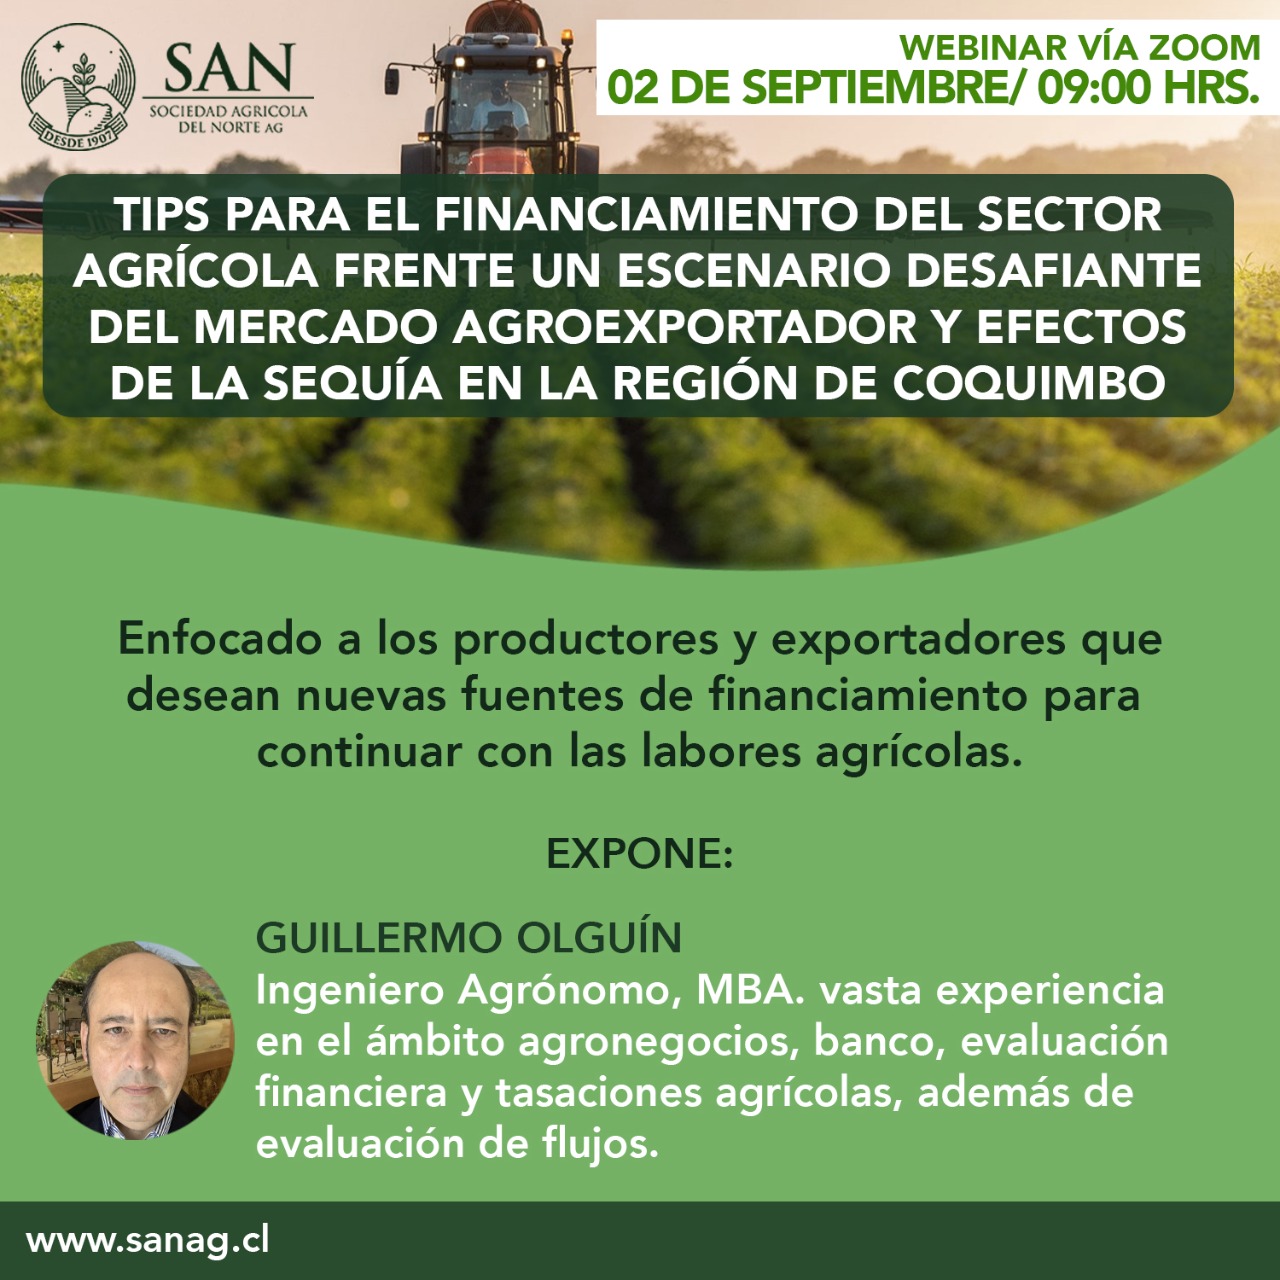 Presentación Webinar De Guillermo Olguín: Tips Para El Financiamiento Del Sector Agrícola Para El Mercado Agroexportador